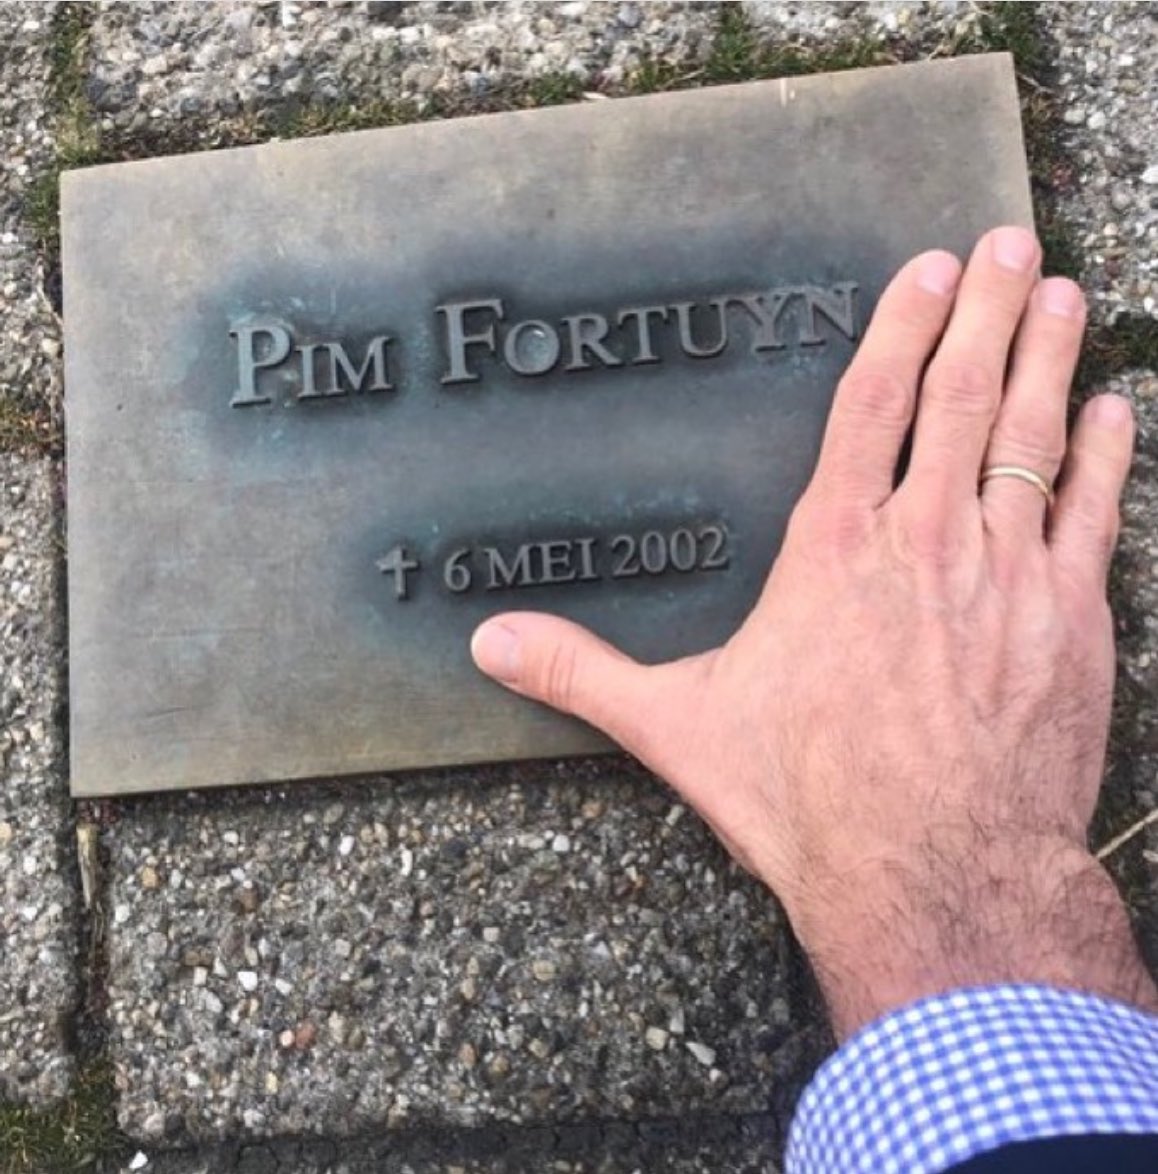 22 jaar geleden werd Pim #Fortuyn laf vermoord toen hij in #Hilversum een radiostudio verliet… De moordenaar loopt ondertss al weer even vrij rond. Als ik in de buurt ben, groet ik Pim altijd even symbolisch uit respect en dank voor wat hij voor ons ideeëngoed heeft betekend…